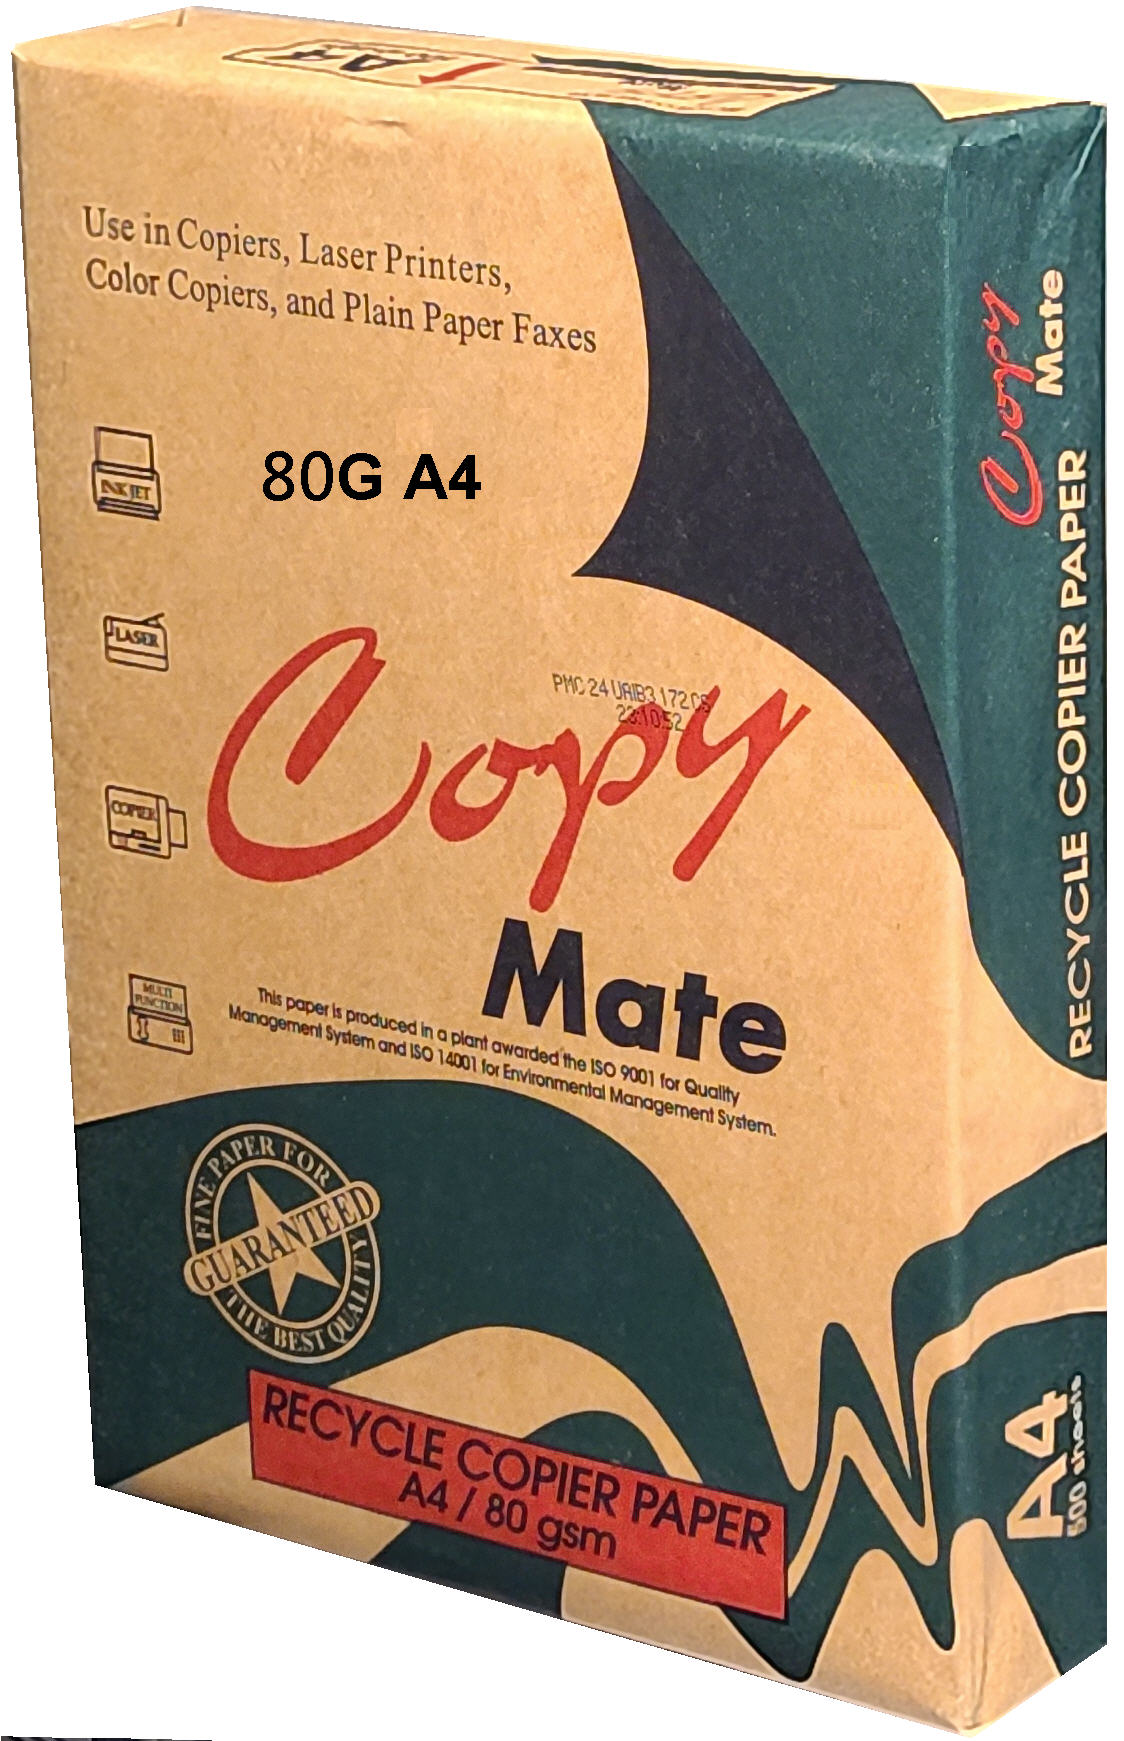 COPY MATE 環保再生紙 80G A4